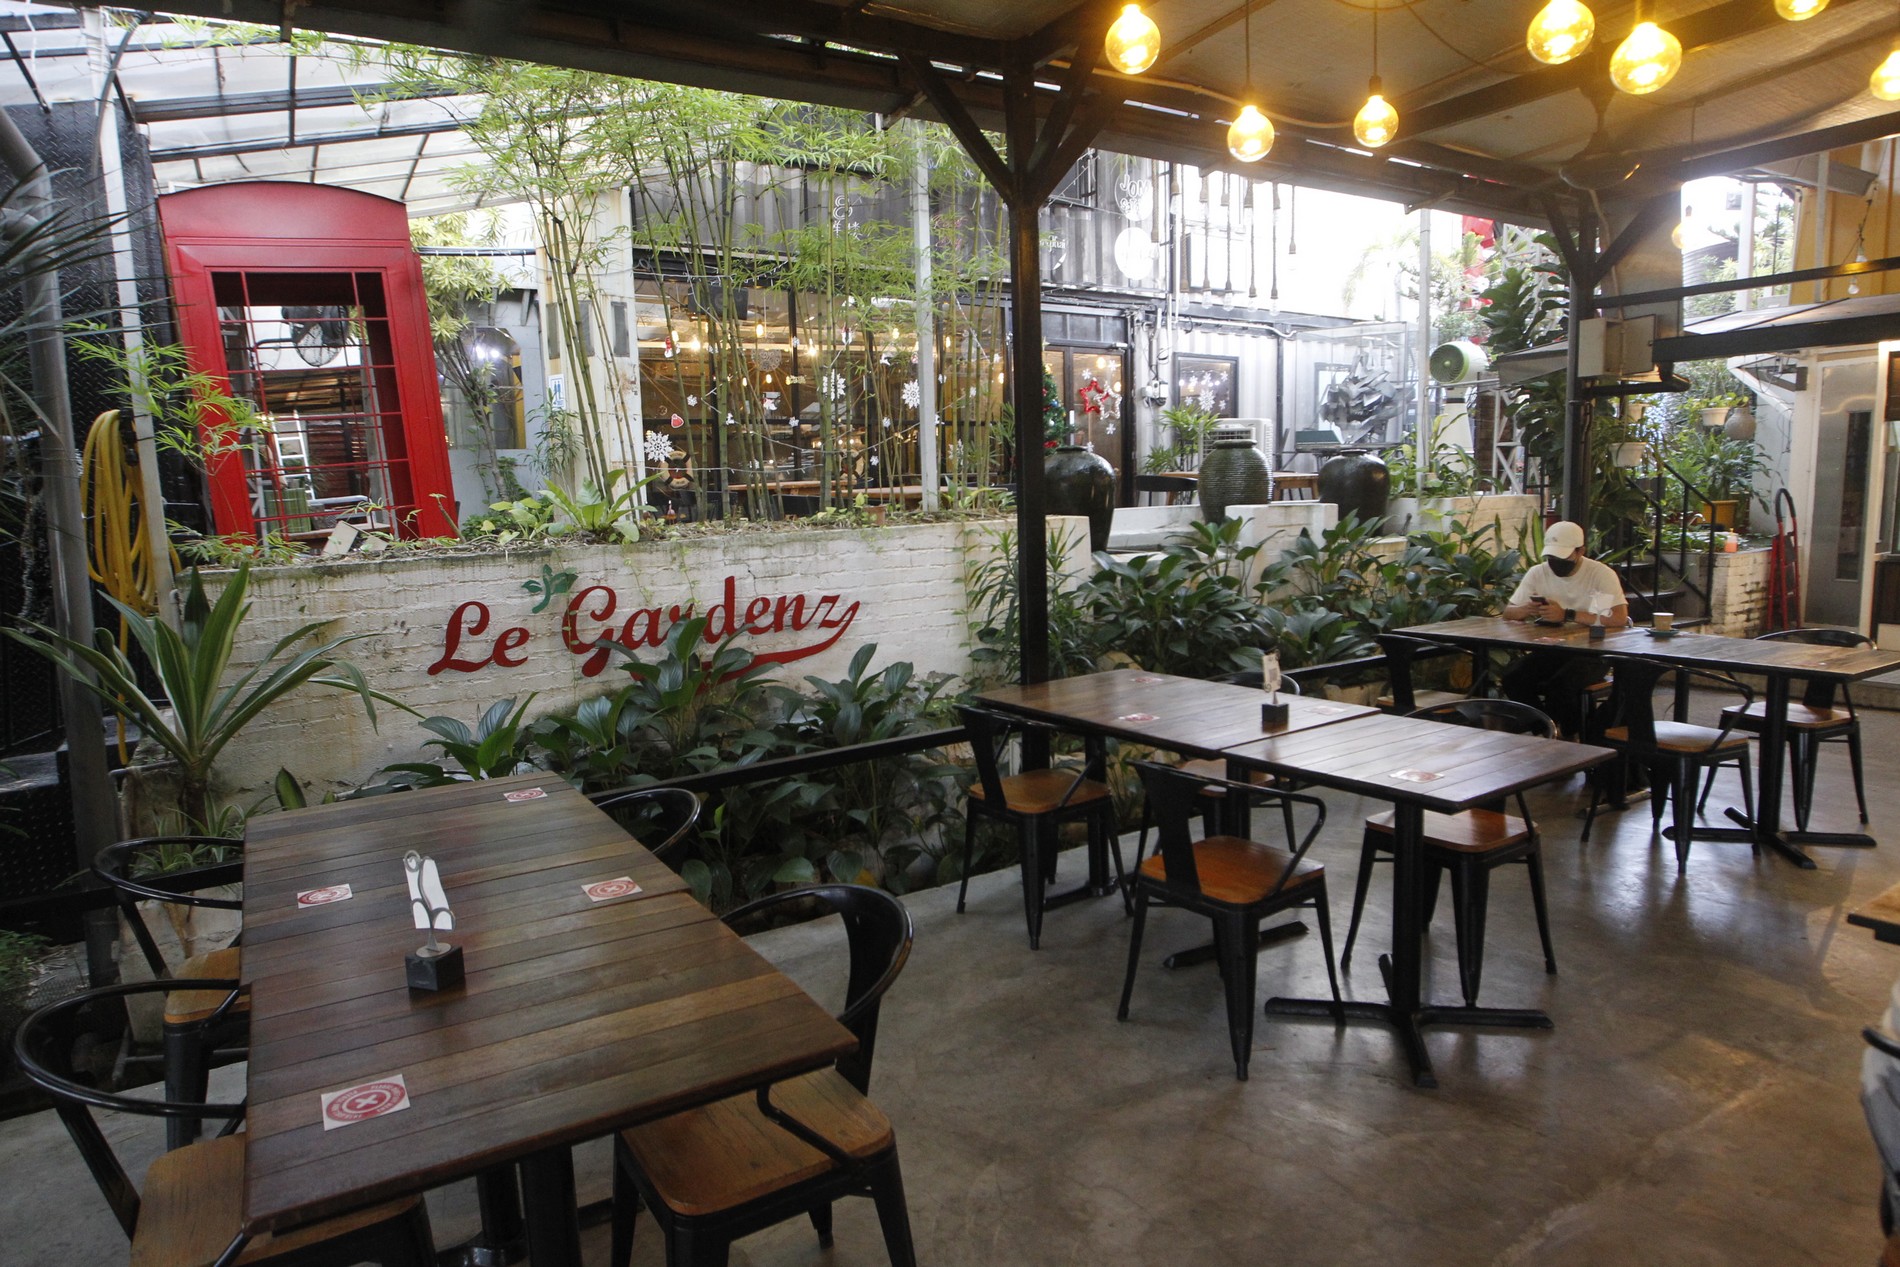 （19日见报）大都会 / 吃遍雪隆- Le Gardenz Cafe/ 15图 